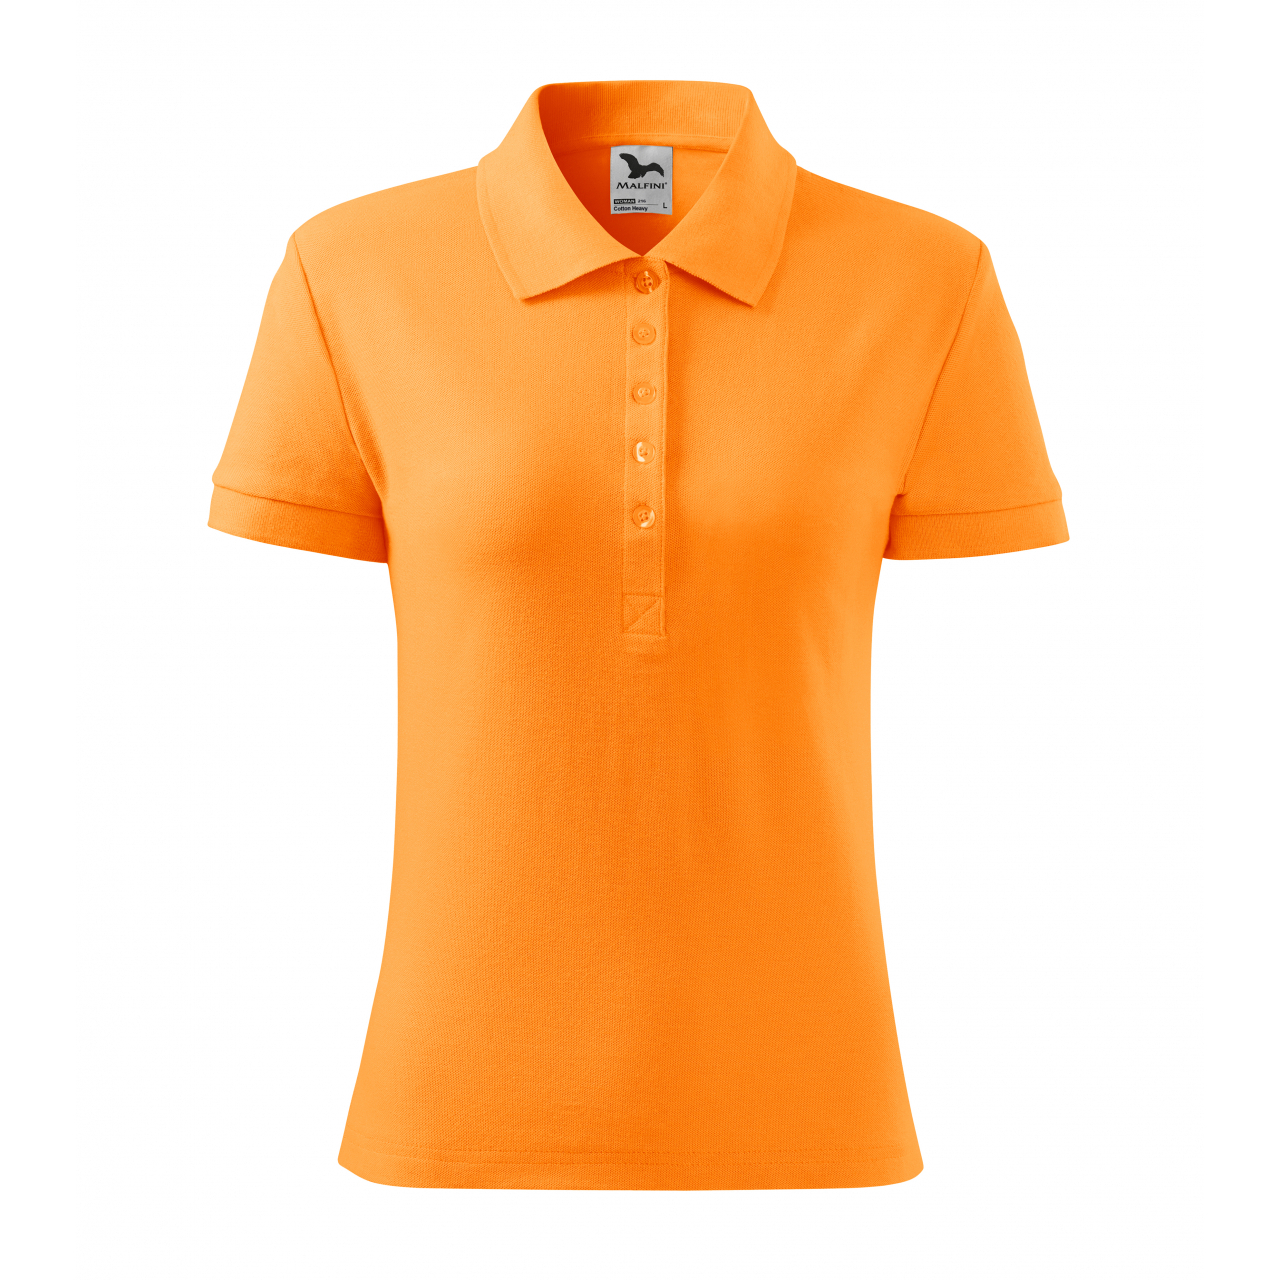 Polokošile dámská Malfini Cotton Heavy - světle oranžová, XL